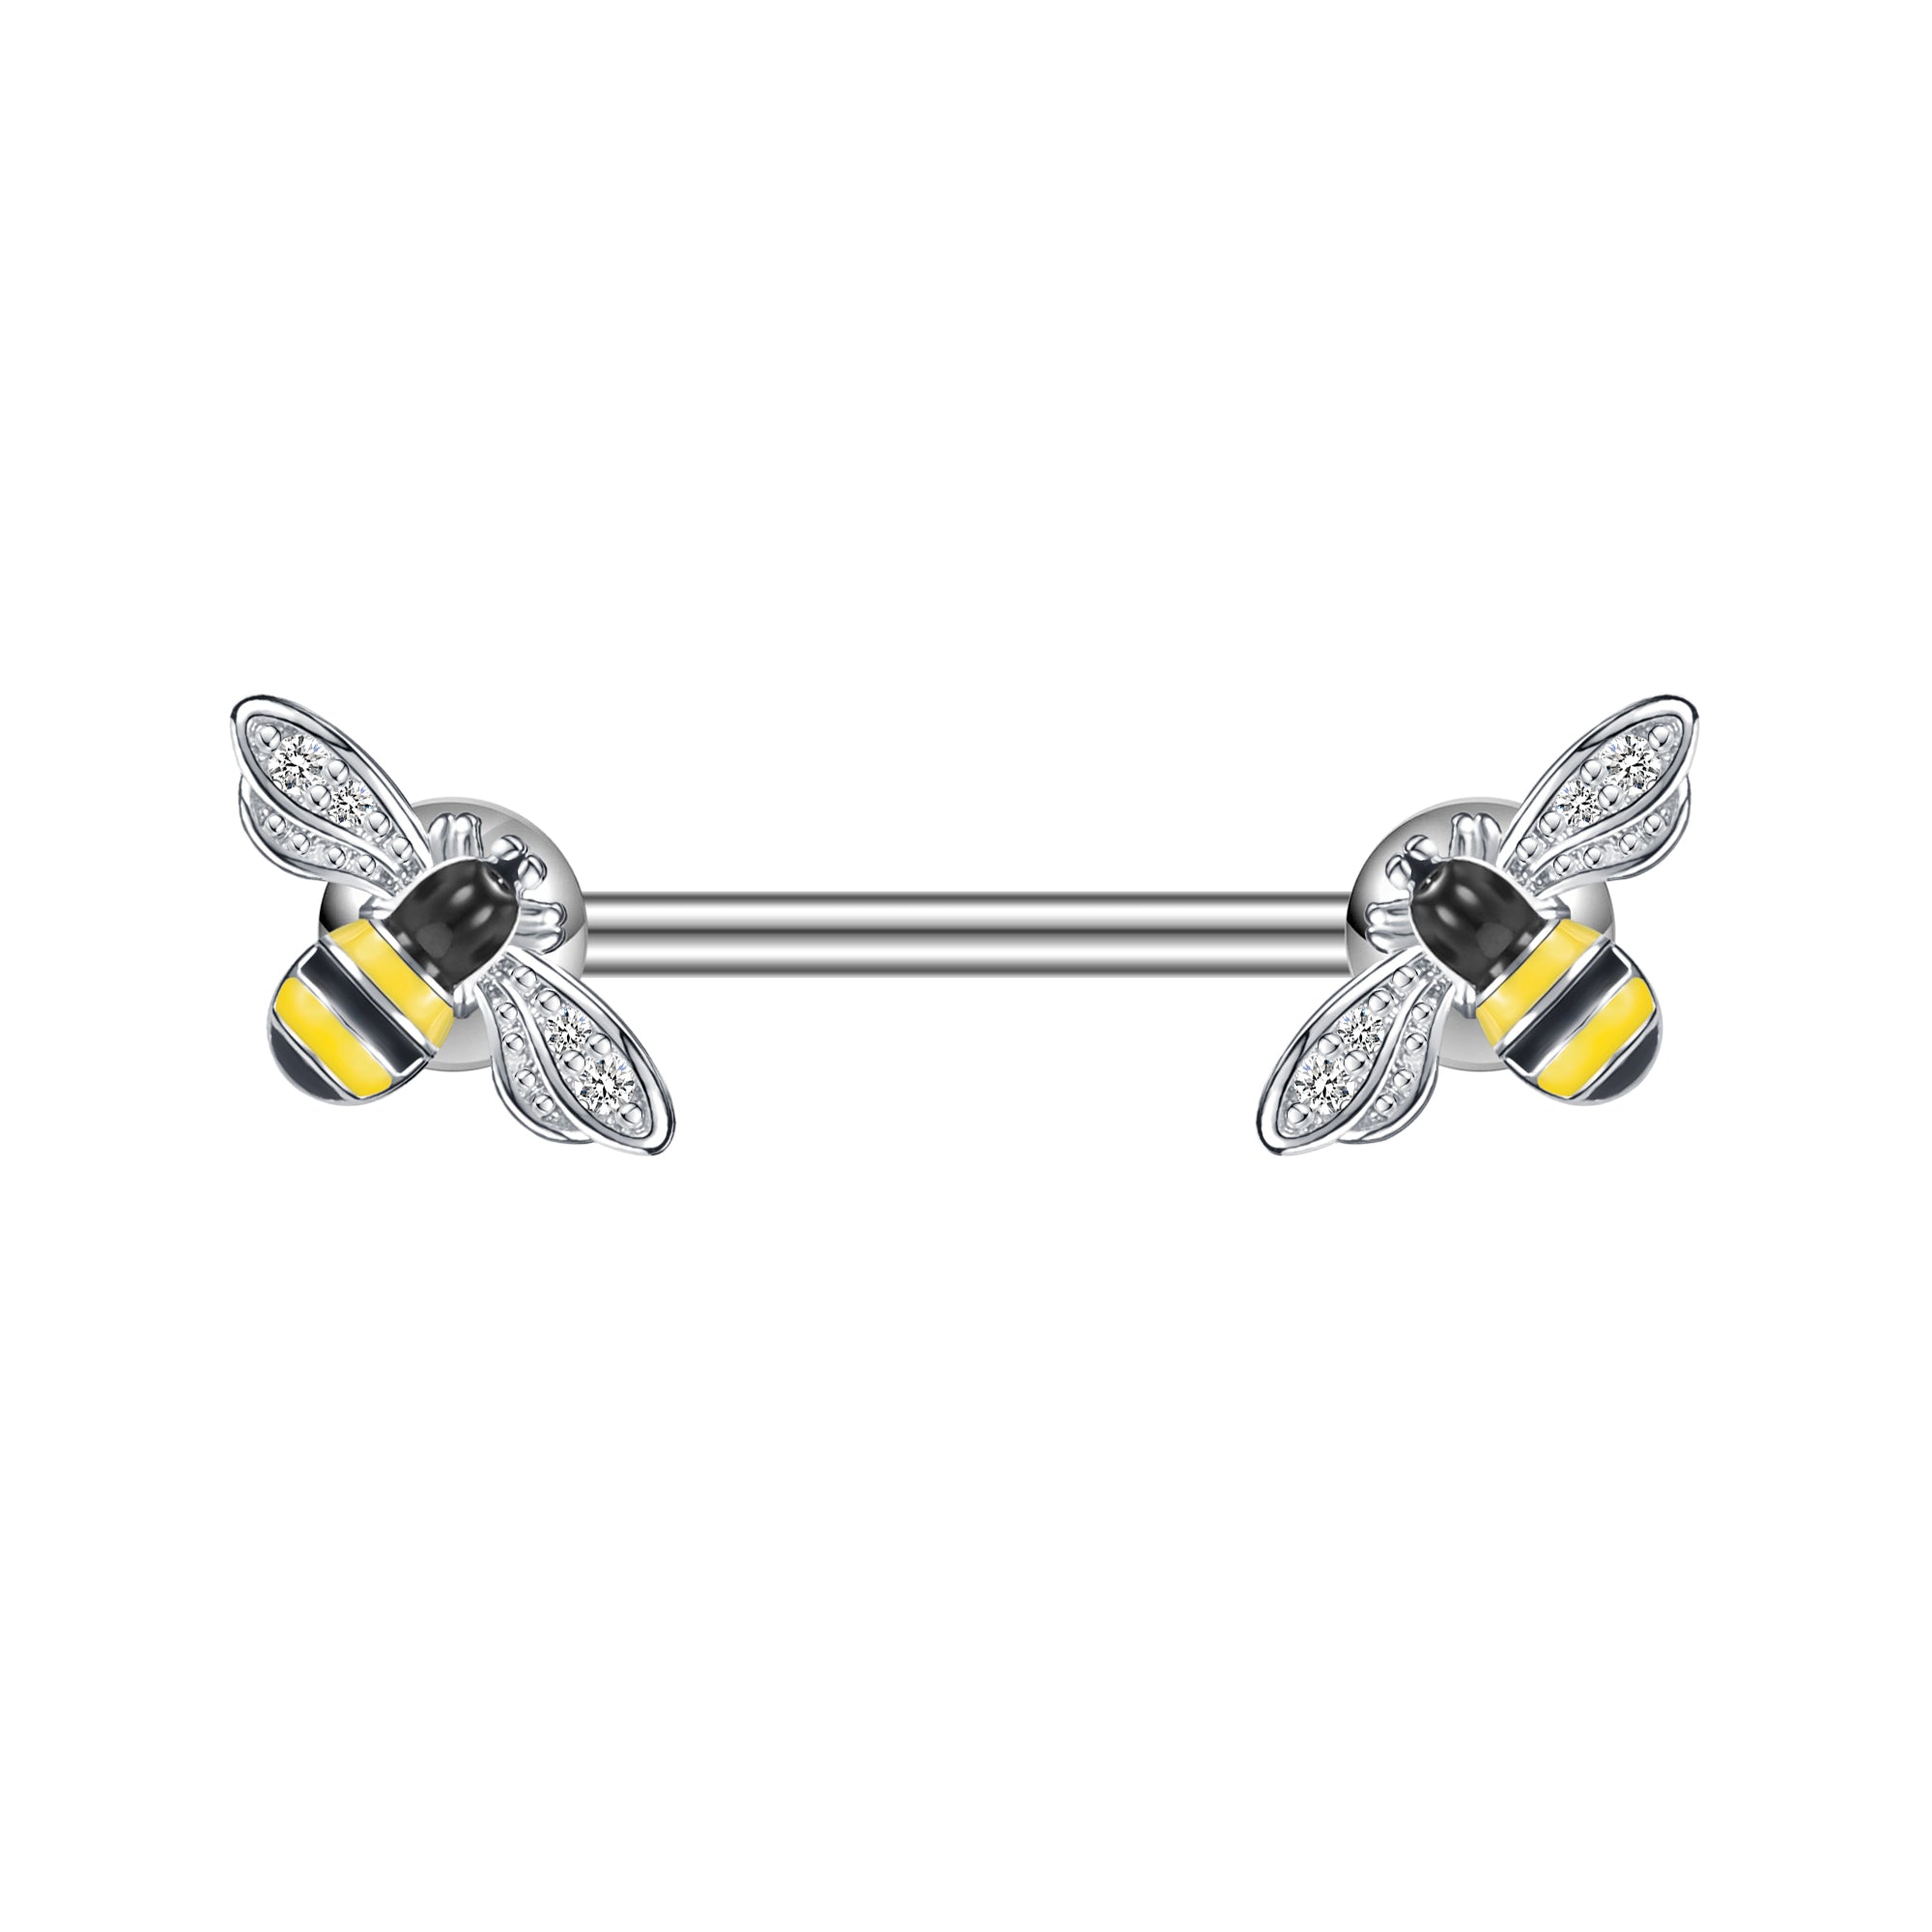 PAIR Boo-Bee Titanium Nipple Rings